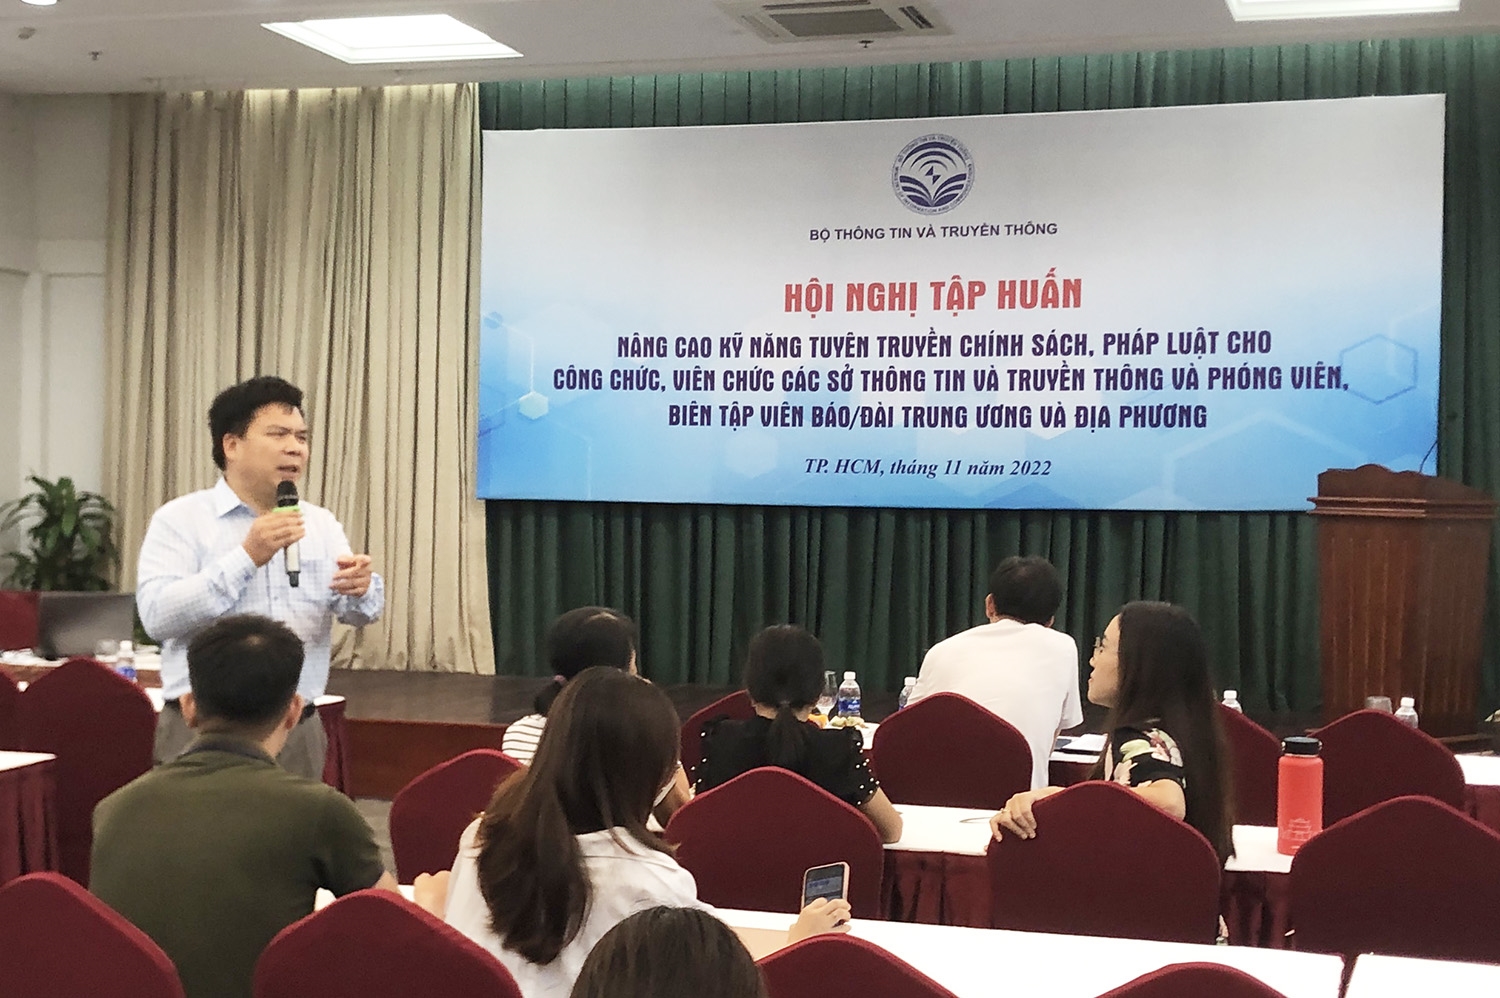 Ông Đinh Xuân Thắng - Phó Vụ trưởng Vụ tuyên truyền - Ủy ban dân tộc trình bày về “Chính sách, pháp luật của Đảng, Nhà nước Việt Nam về dân tộc, miền núi”